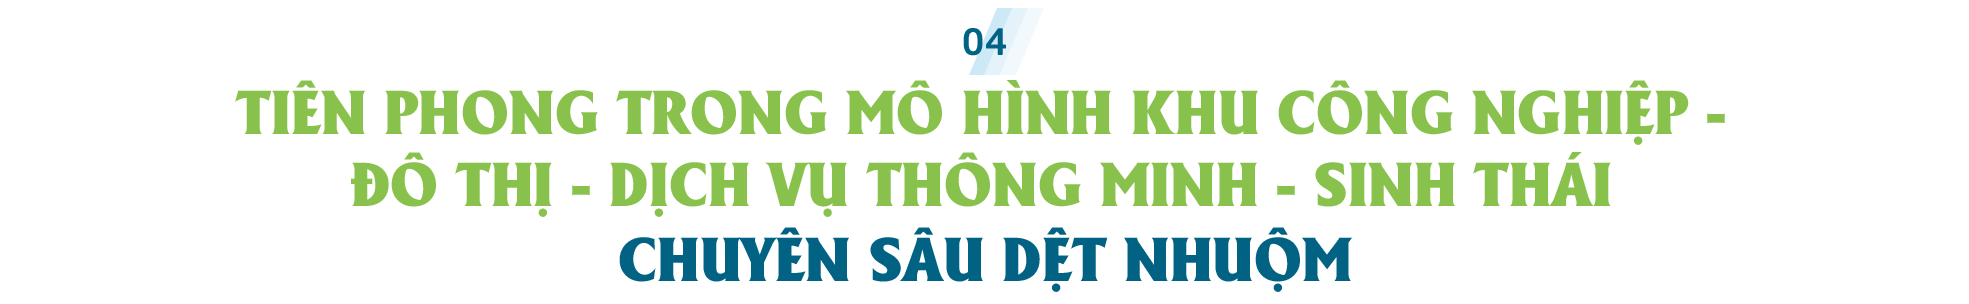 Giải bài toán đầu vào của ngành dệt may Việt Nam: Nhìn từ định hướng chiến lược phát triển Khu công nghiệp Aurora IP tỉnh Nam Định - Ảnh 11.